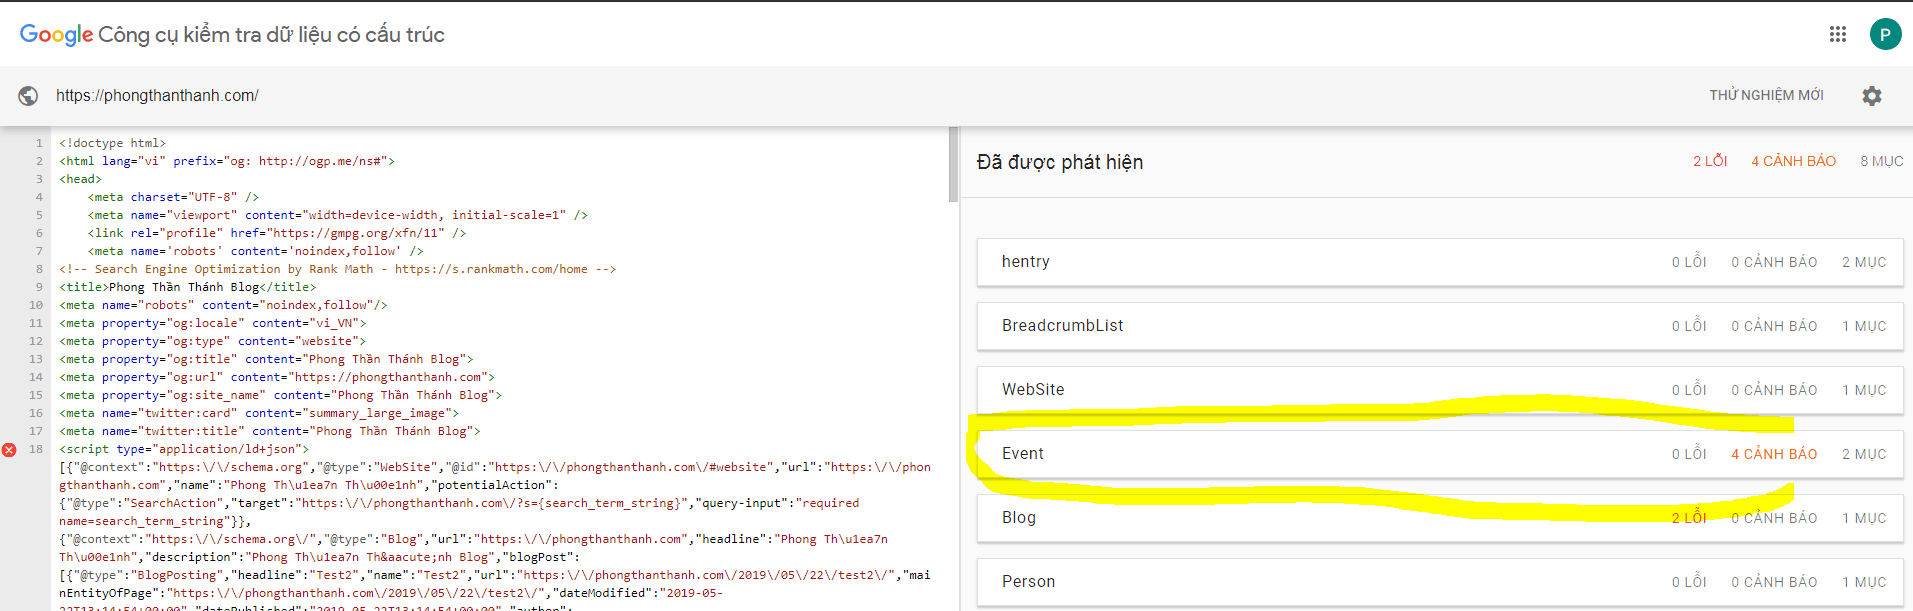 cách check schema event vào website